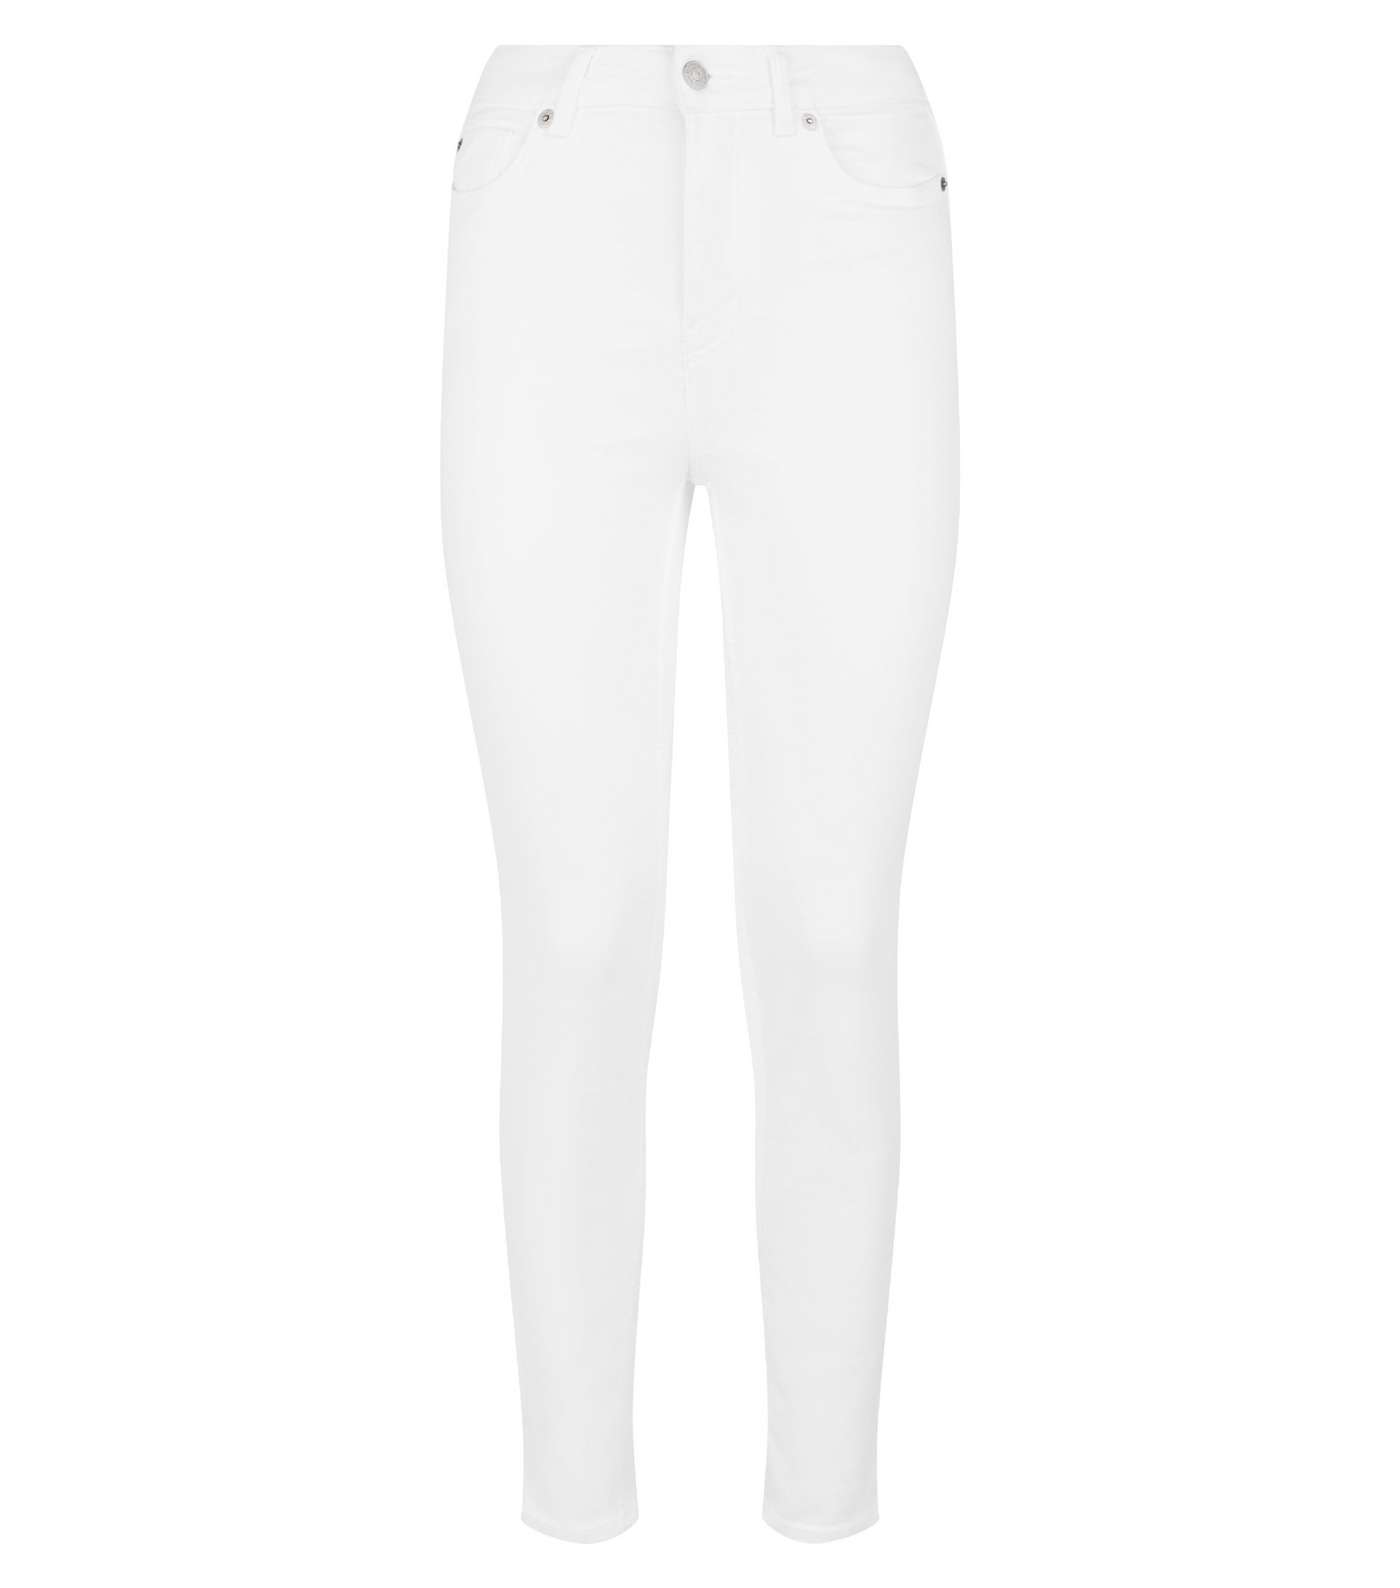 White High Waist 'Lift & Shape' Skinny Jeans Image 4